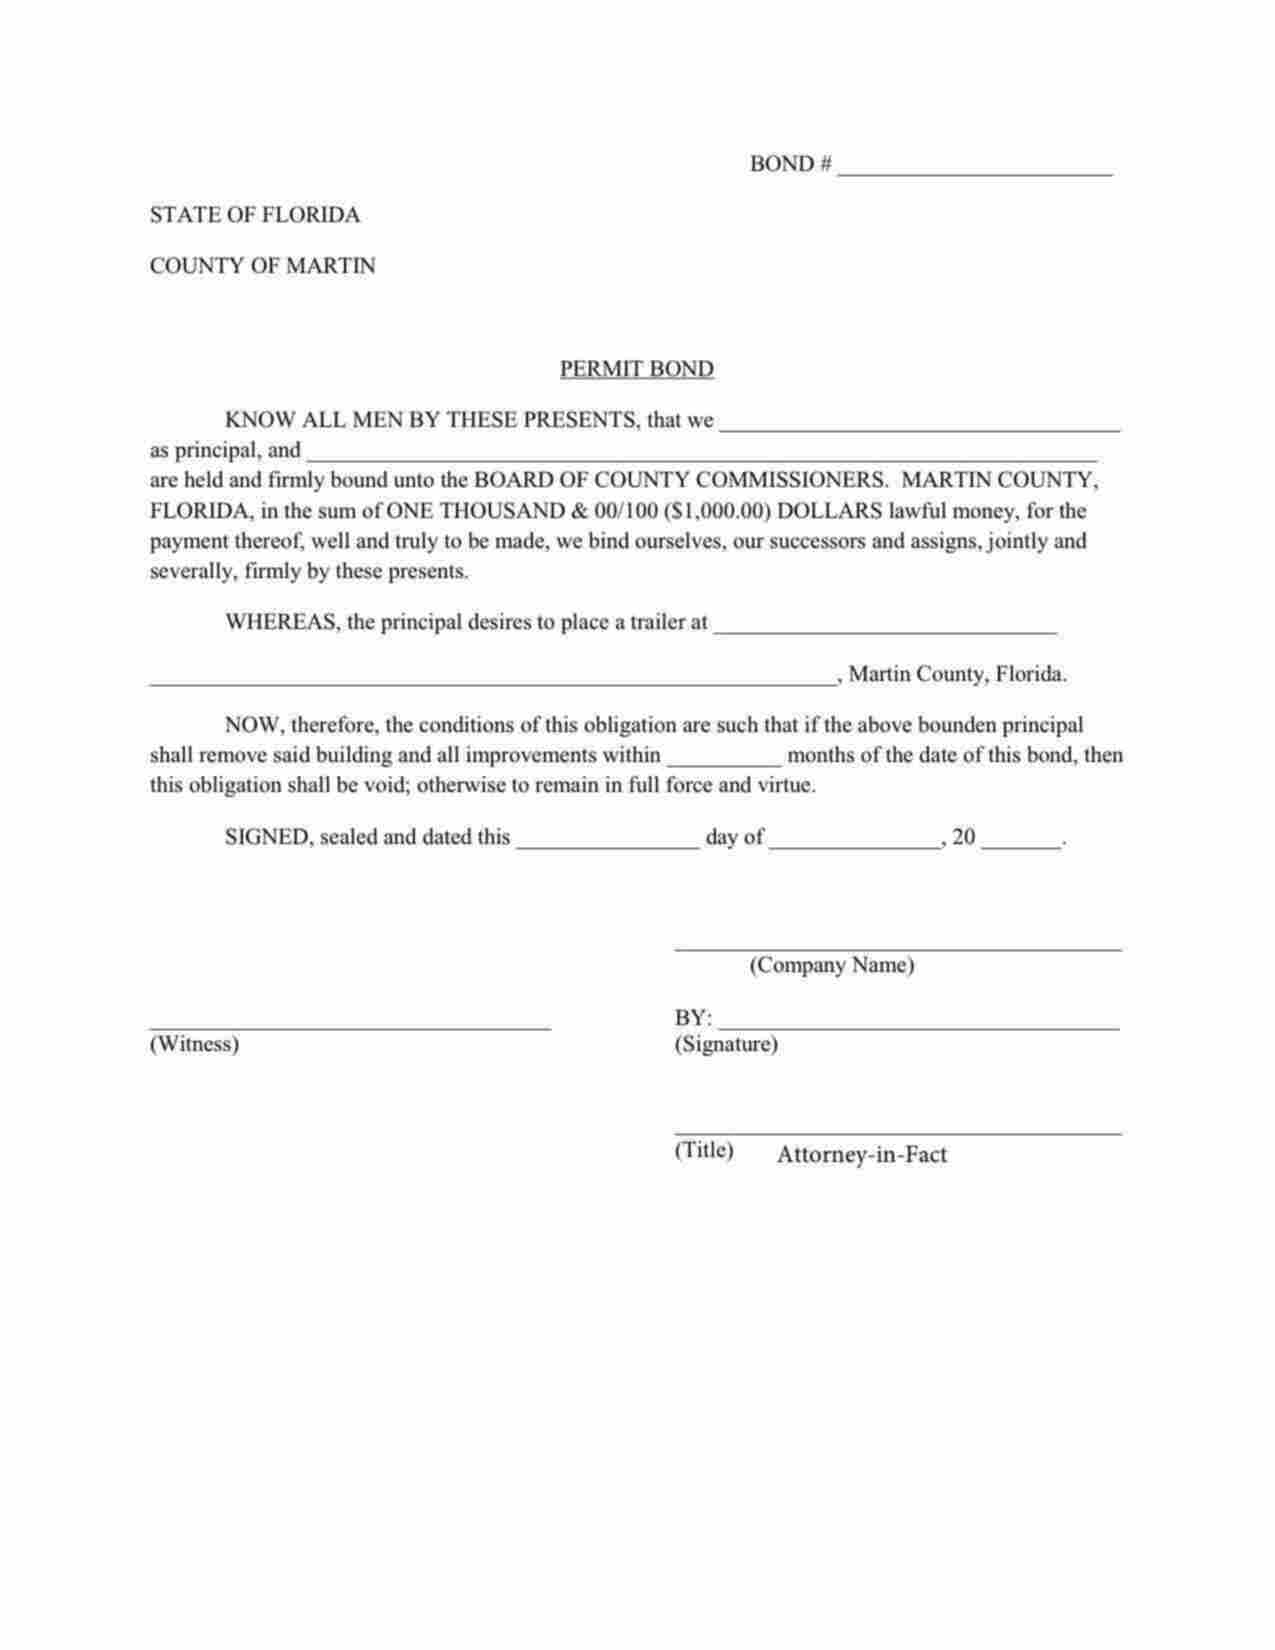 Florida Trailer Placement Permit Bond Form